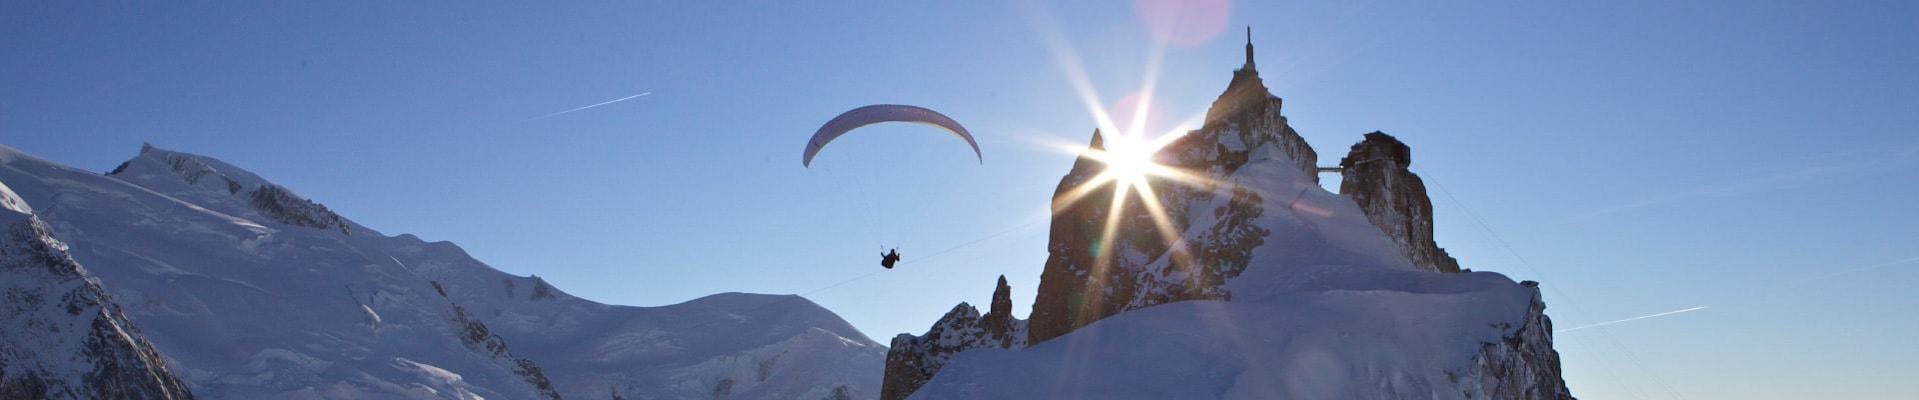 Volo in alta quota in parapendio biposto a Chamonix (da 16 anni) - Aiguille du Midi.